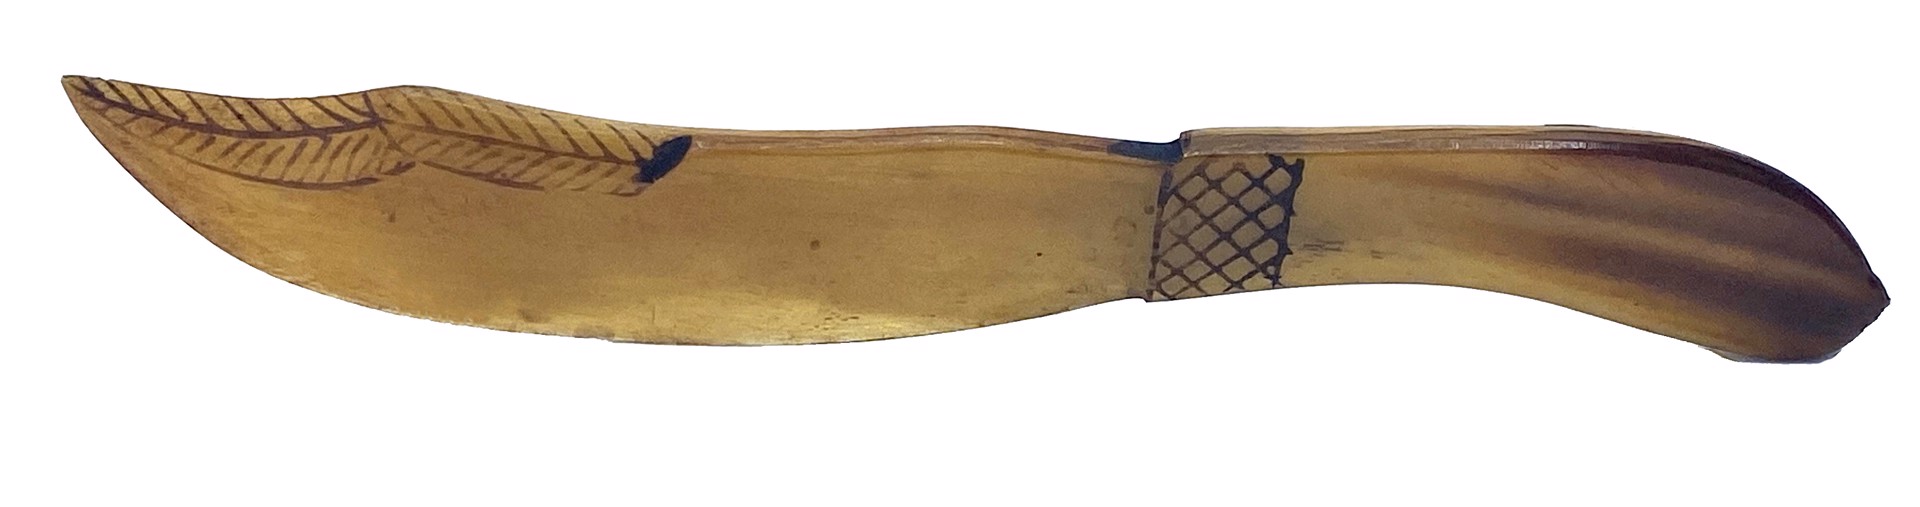 DS-7: shriner scimitar sword (letter opener) by Dan Super